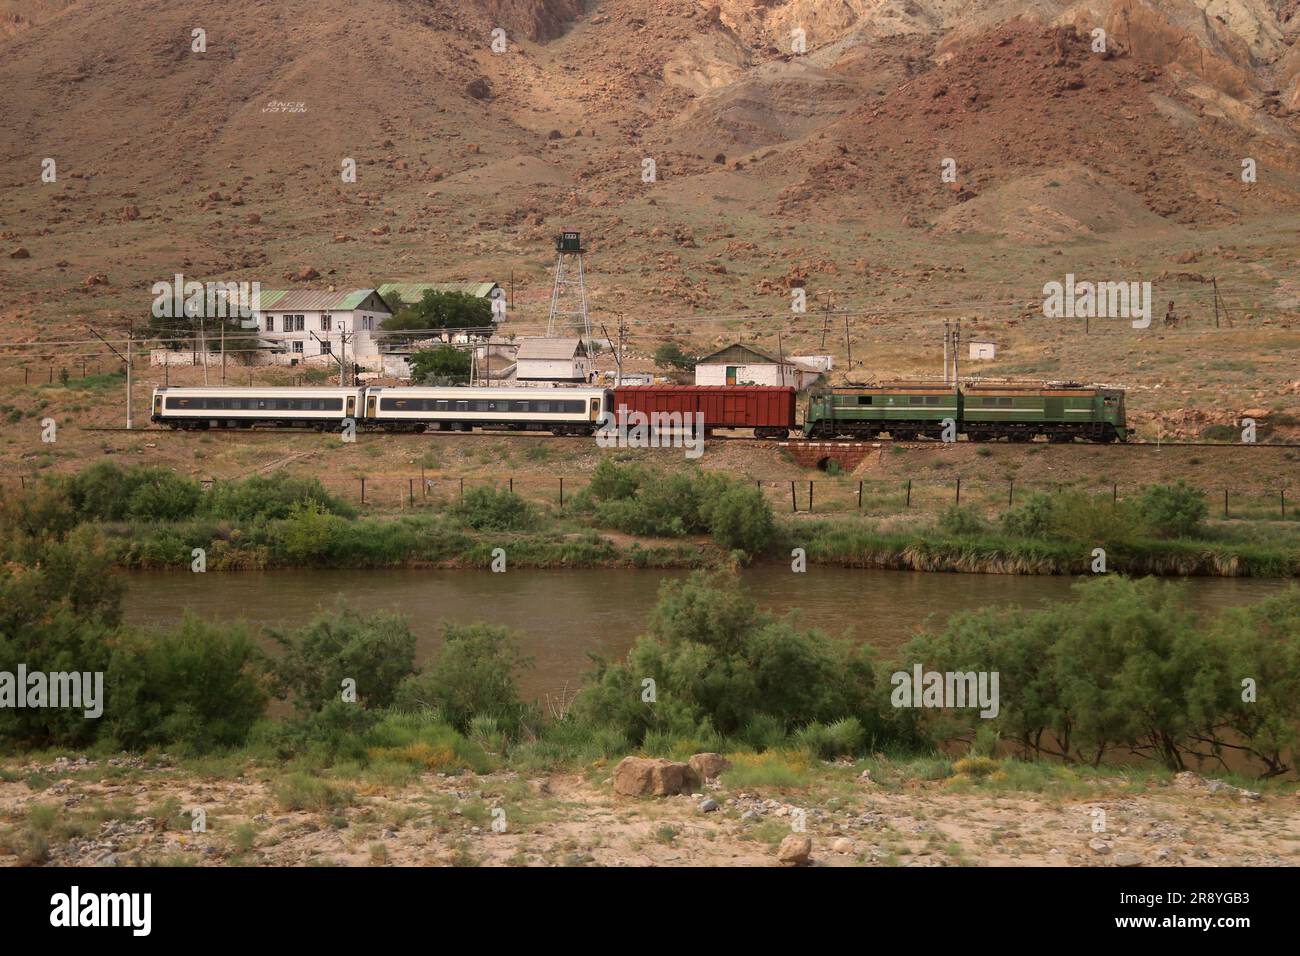 21 de junio de 2023, Jolfa, Azerbaiyán Oriental, Irán: Una parada de tren en una estación de tren cerca del río Aras en la frontera entre el noroeste de Irán y Azerbaiyán. El Aras (los Araks, Arax, Araxes, o Araz) es un río en el Cáucaso. Se levanta en el este de Turquía y fluye a lo largo de las fronteras entre Turquía y Armenia, entre Turquía y el exclave de Najicheván de Azerbaiyán, entre Irán y Azerbaiyán y Armenia, y, finalmente, a través de Azerbaiyán, donde desemboca en el río Kura. Drena el lado sur de las montañas del Cáucaso Menor, mientras que el Kura drena el lado norte del Cáucaso Menor. Foto de stock